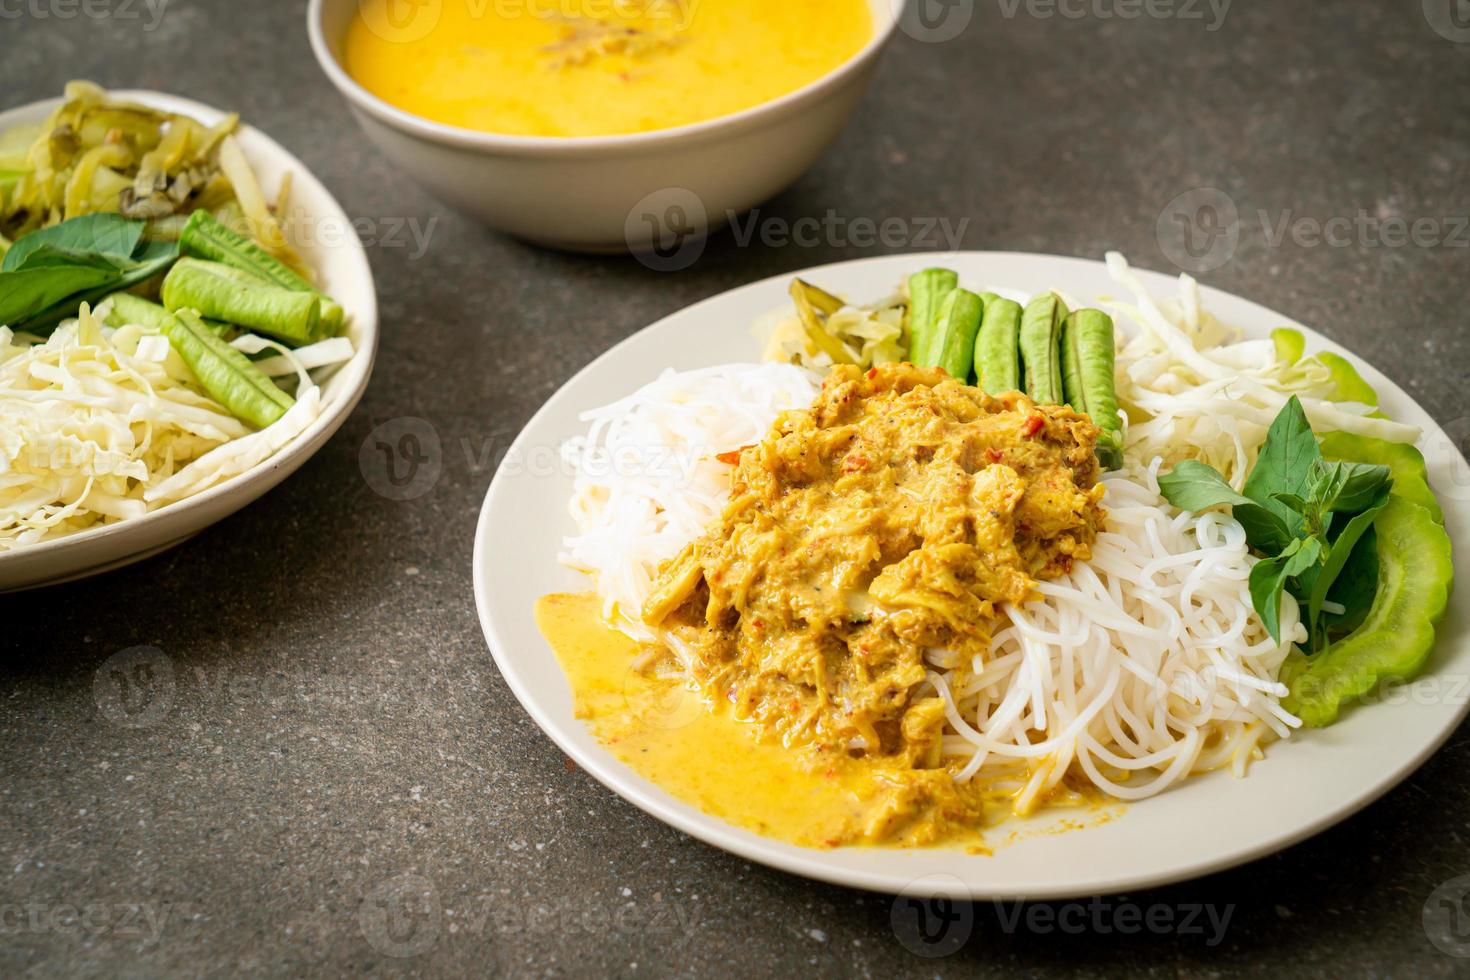 Thaise rijstnoedels met krabcurry en diverse groenten foto